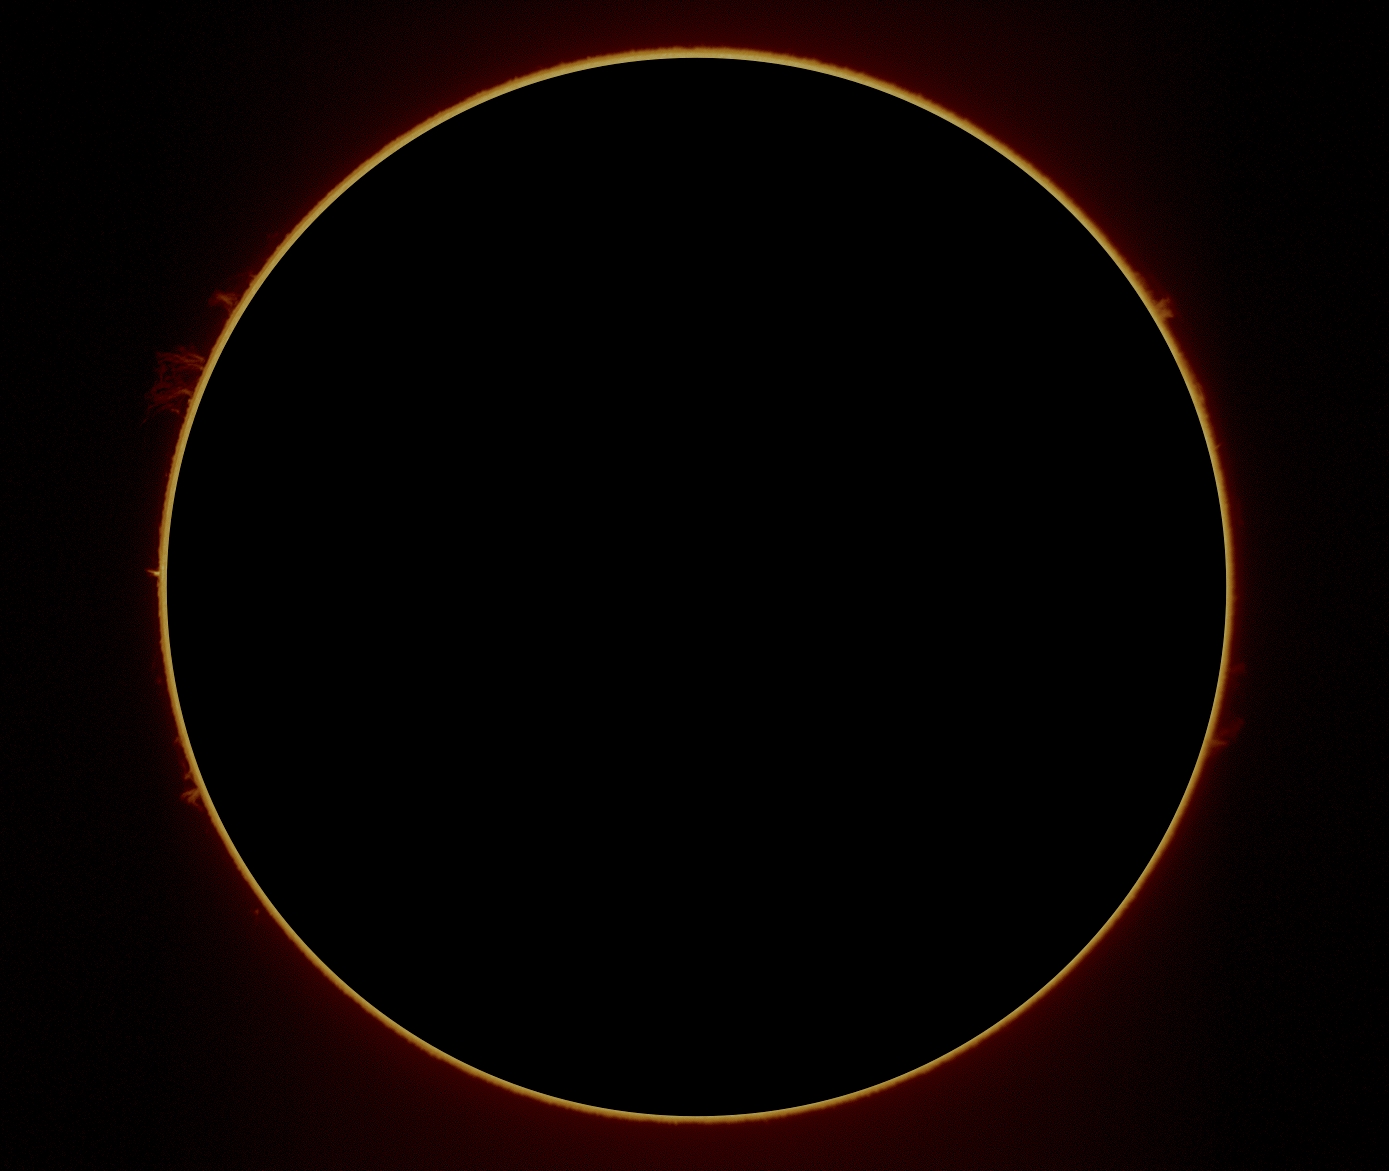 Solar Rim Disc 1 April 2017